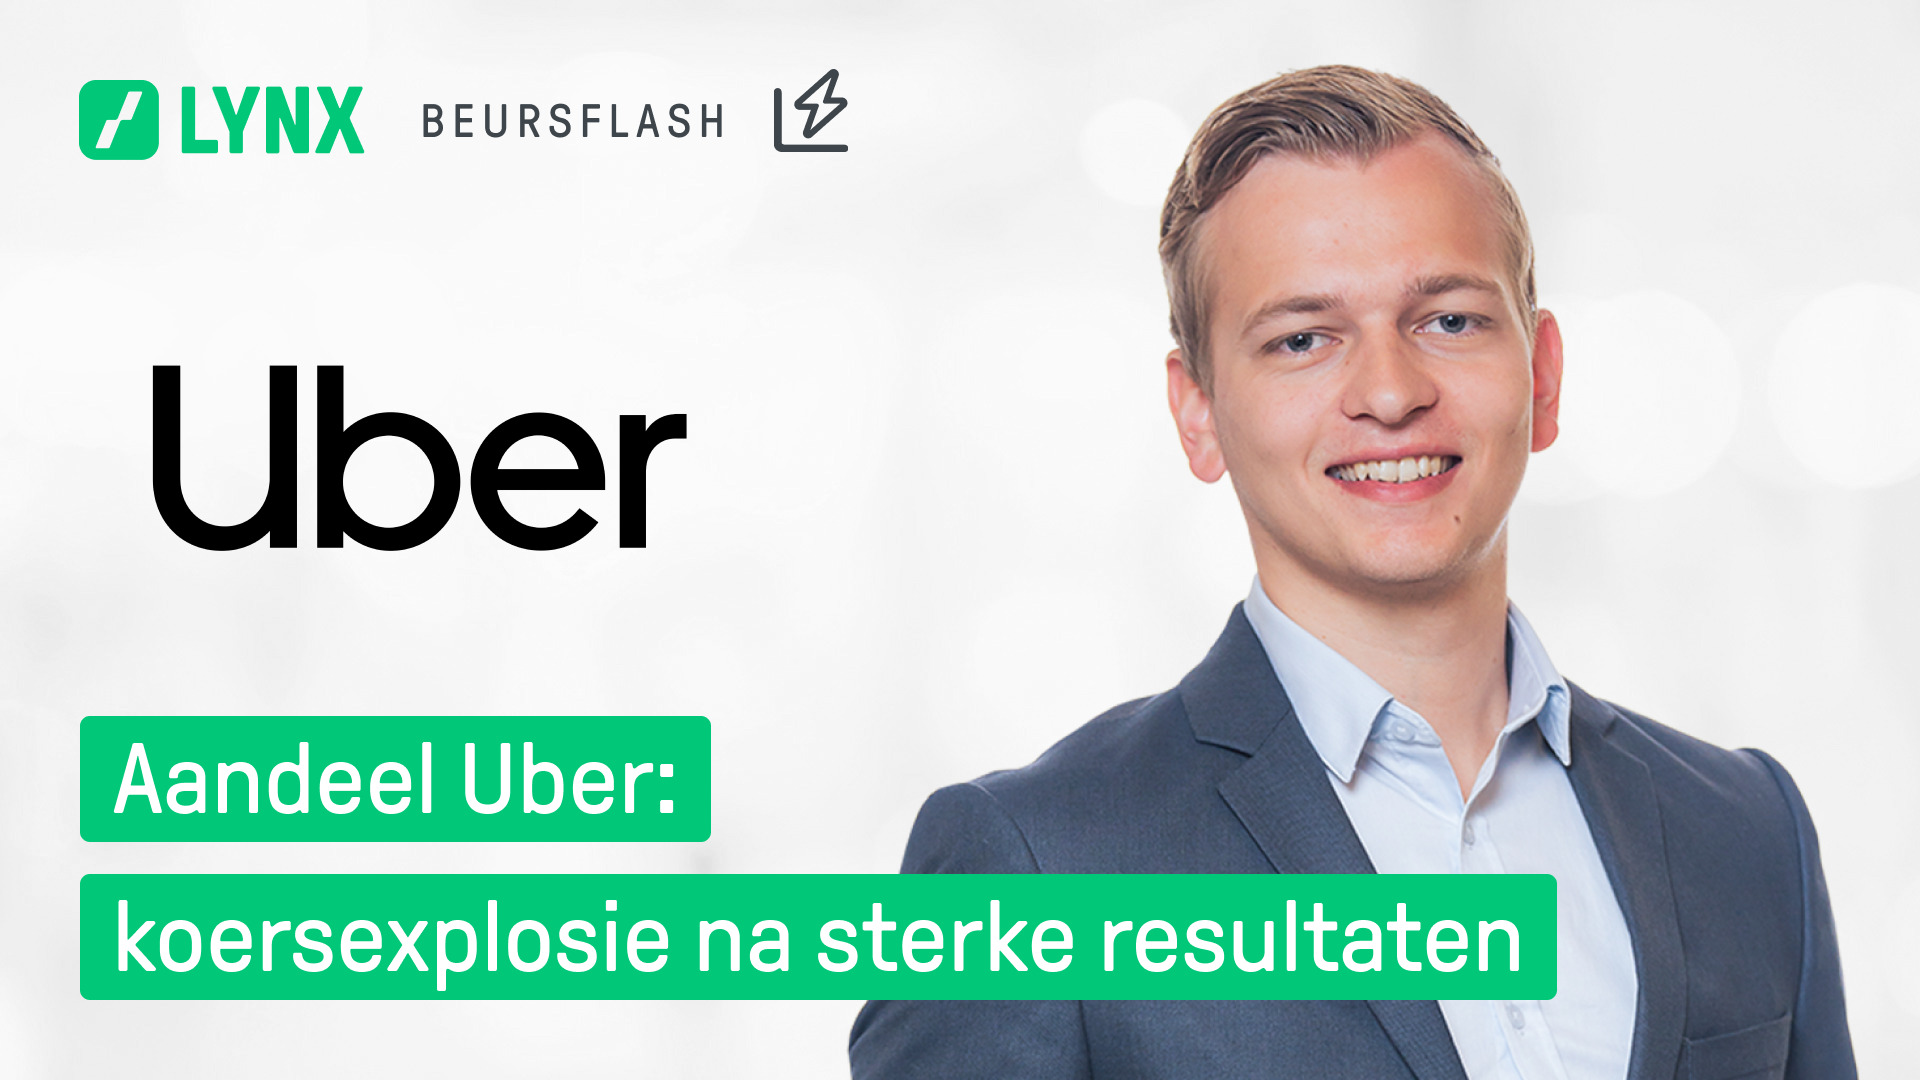 aandeel uber - lynx beursflash - kwartaalcijfers uber